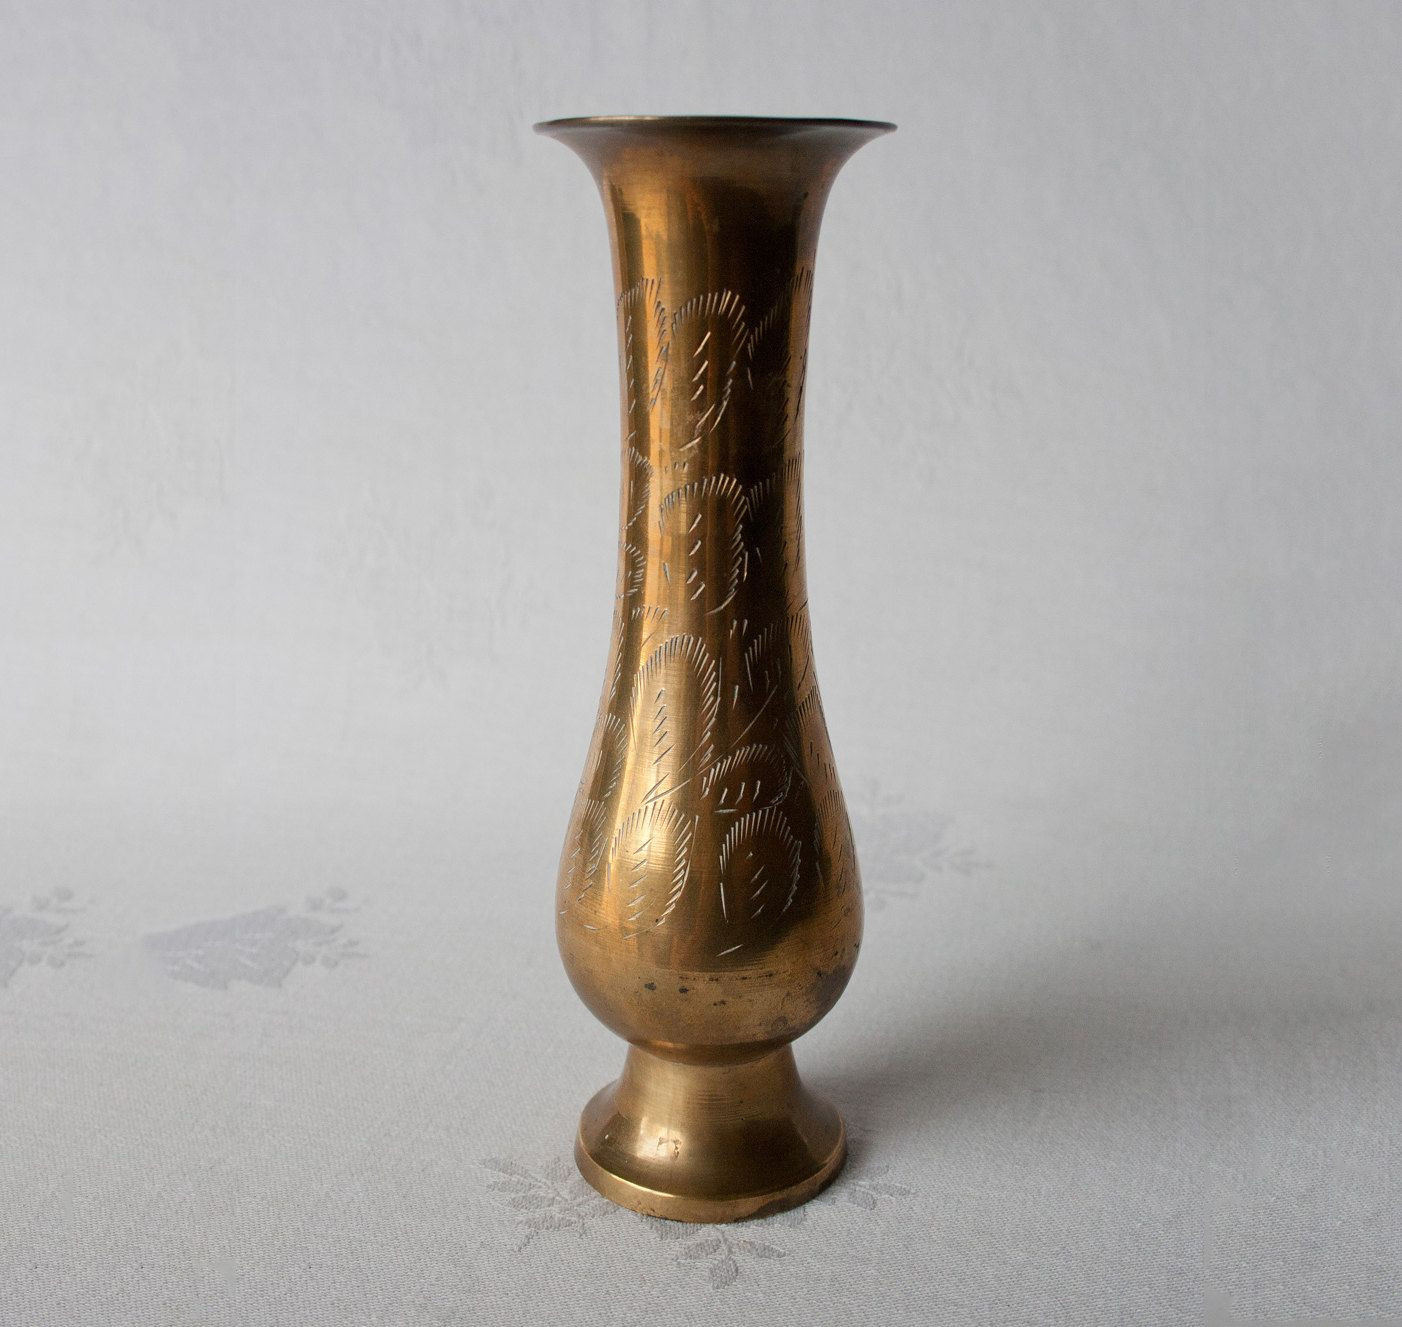 10 Recommended Vintage Brass Vase 2024 free download vintage brass vase of engraved brass vase made in india 12 00 via etsy jars bottles for engraved brass vase made in india 12 00 via etsy